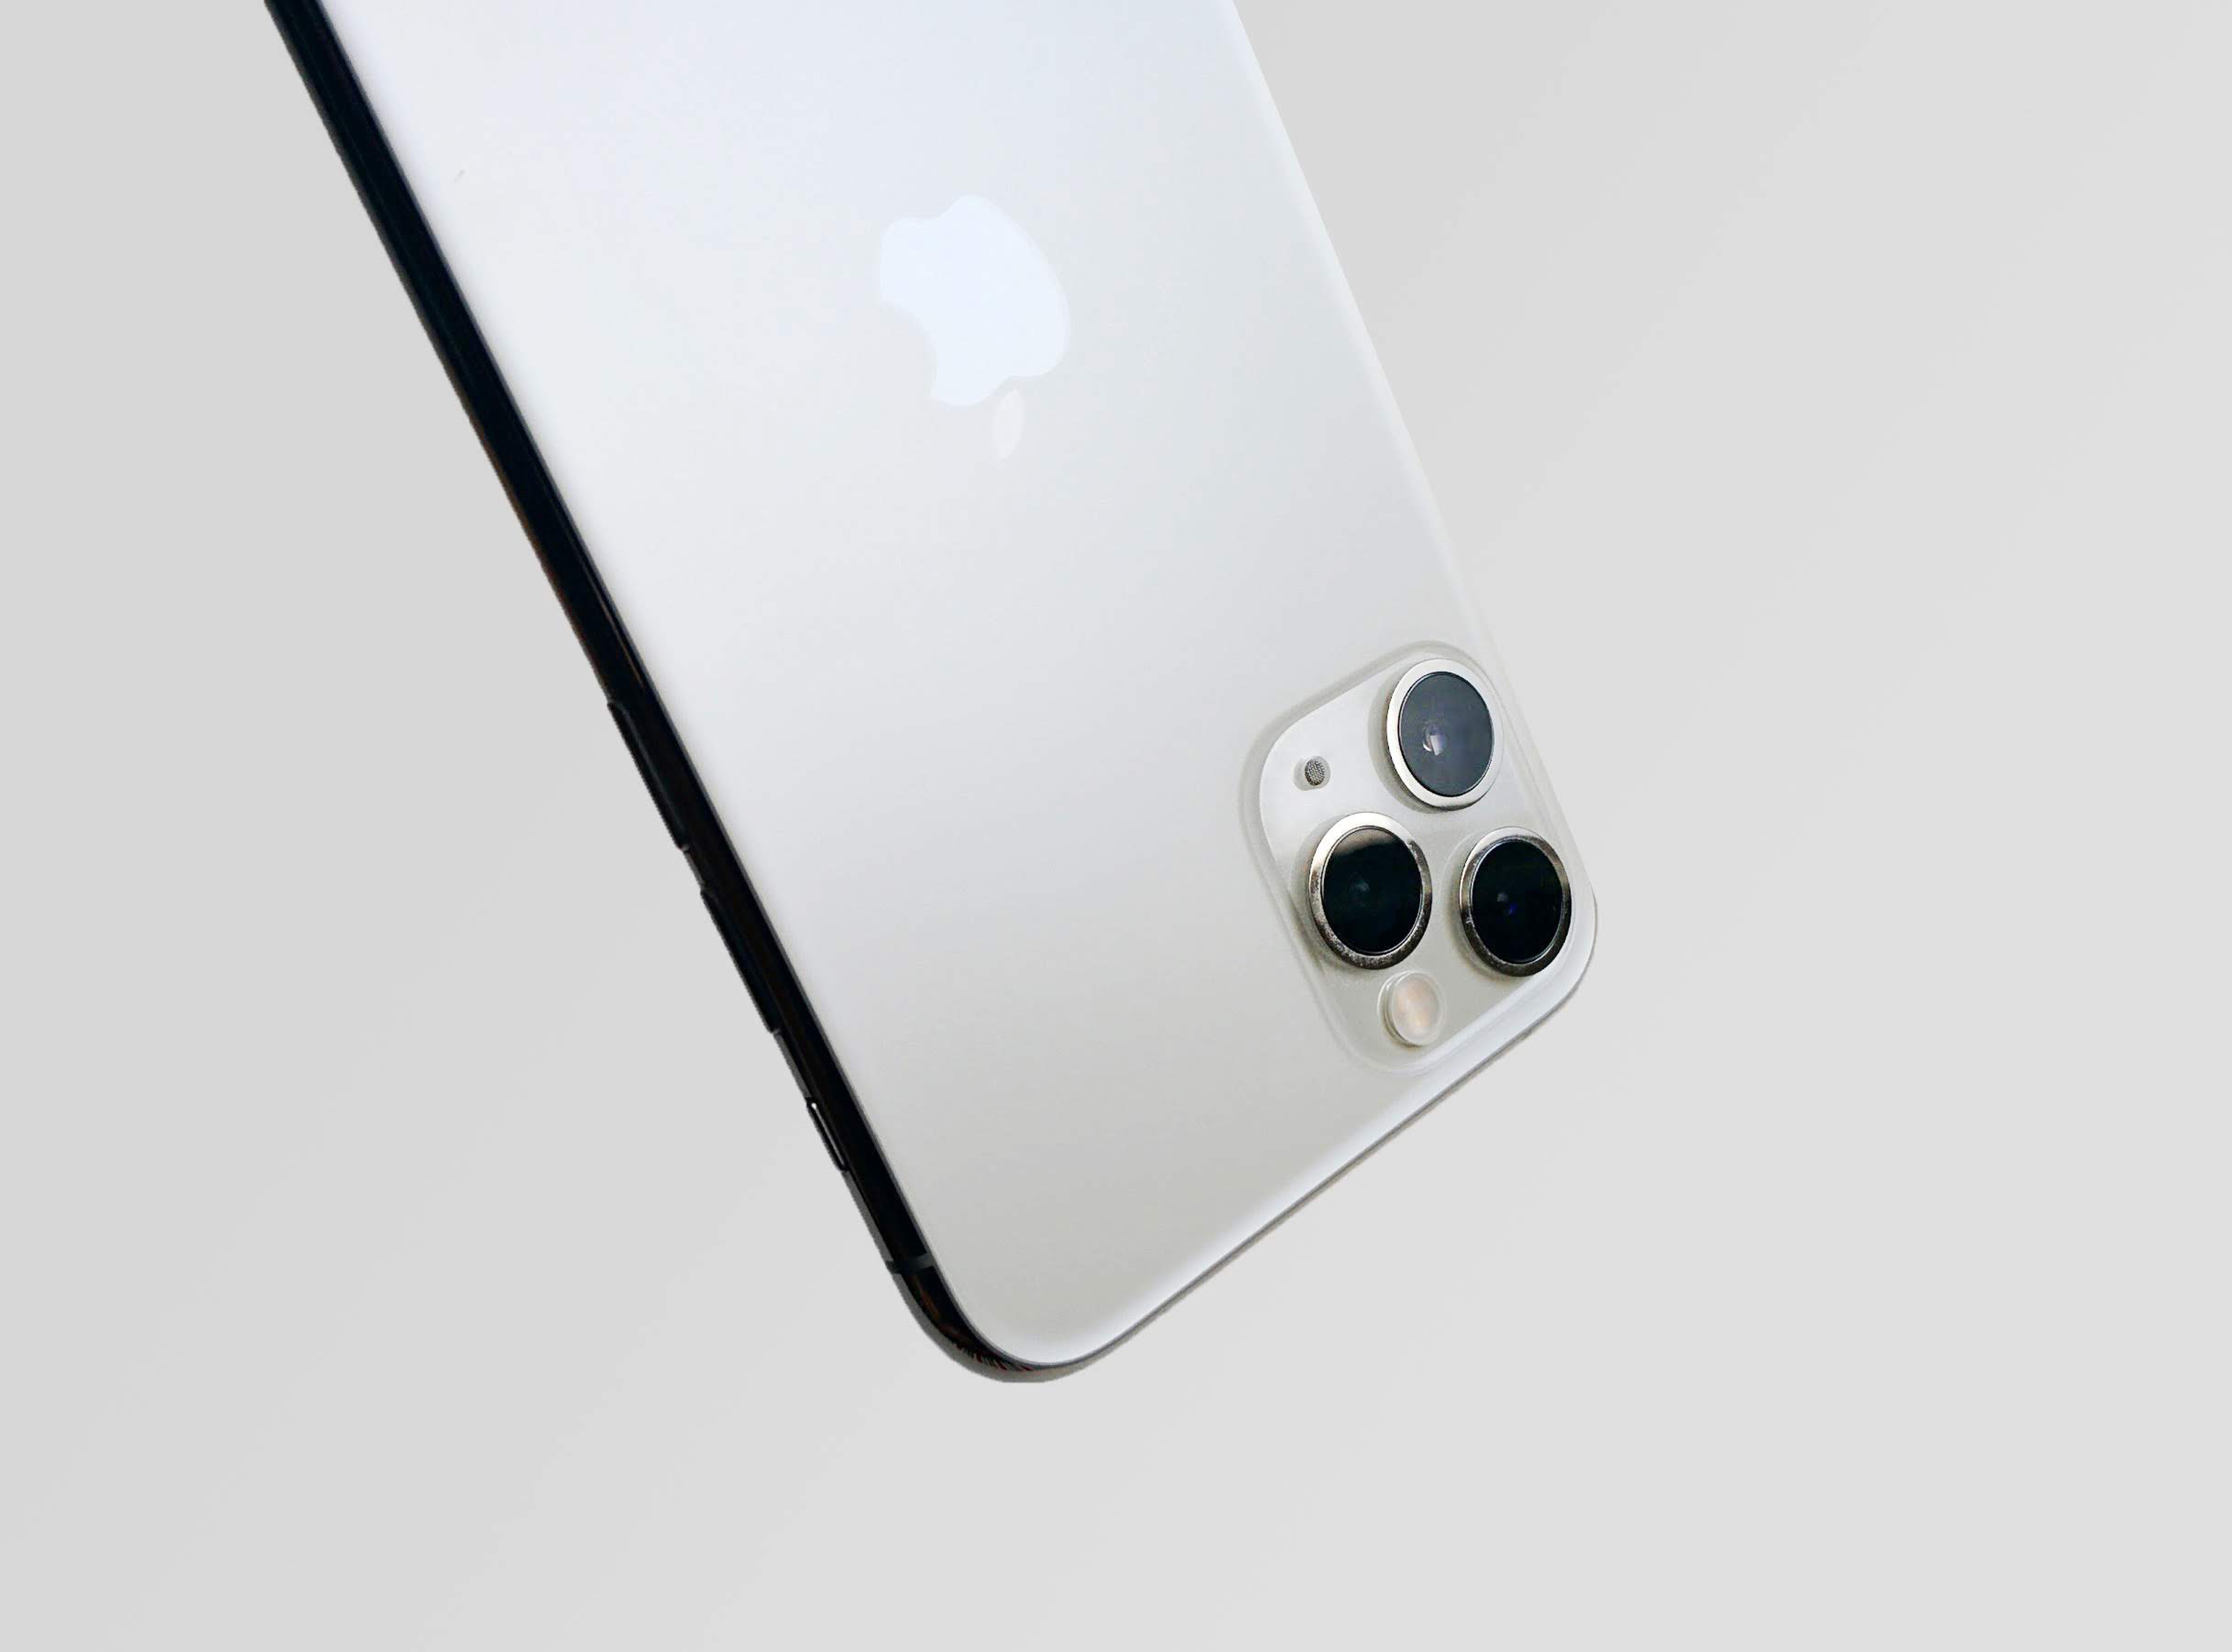 iPhone 11 Pro Max